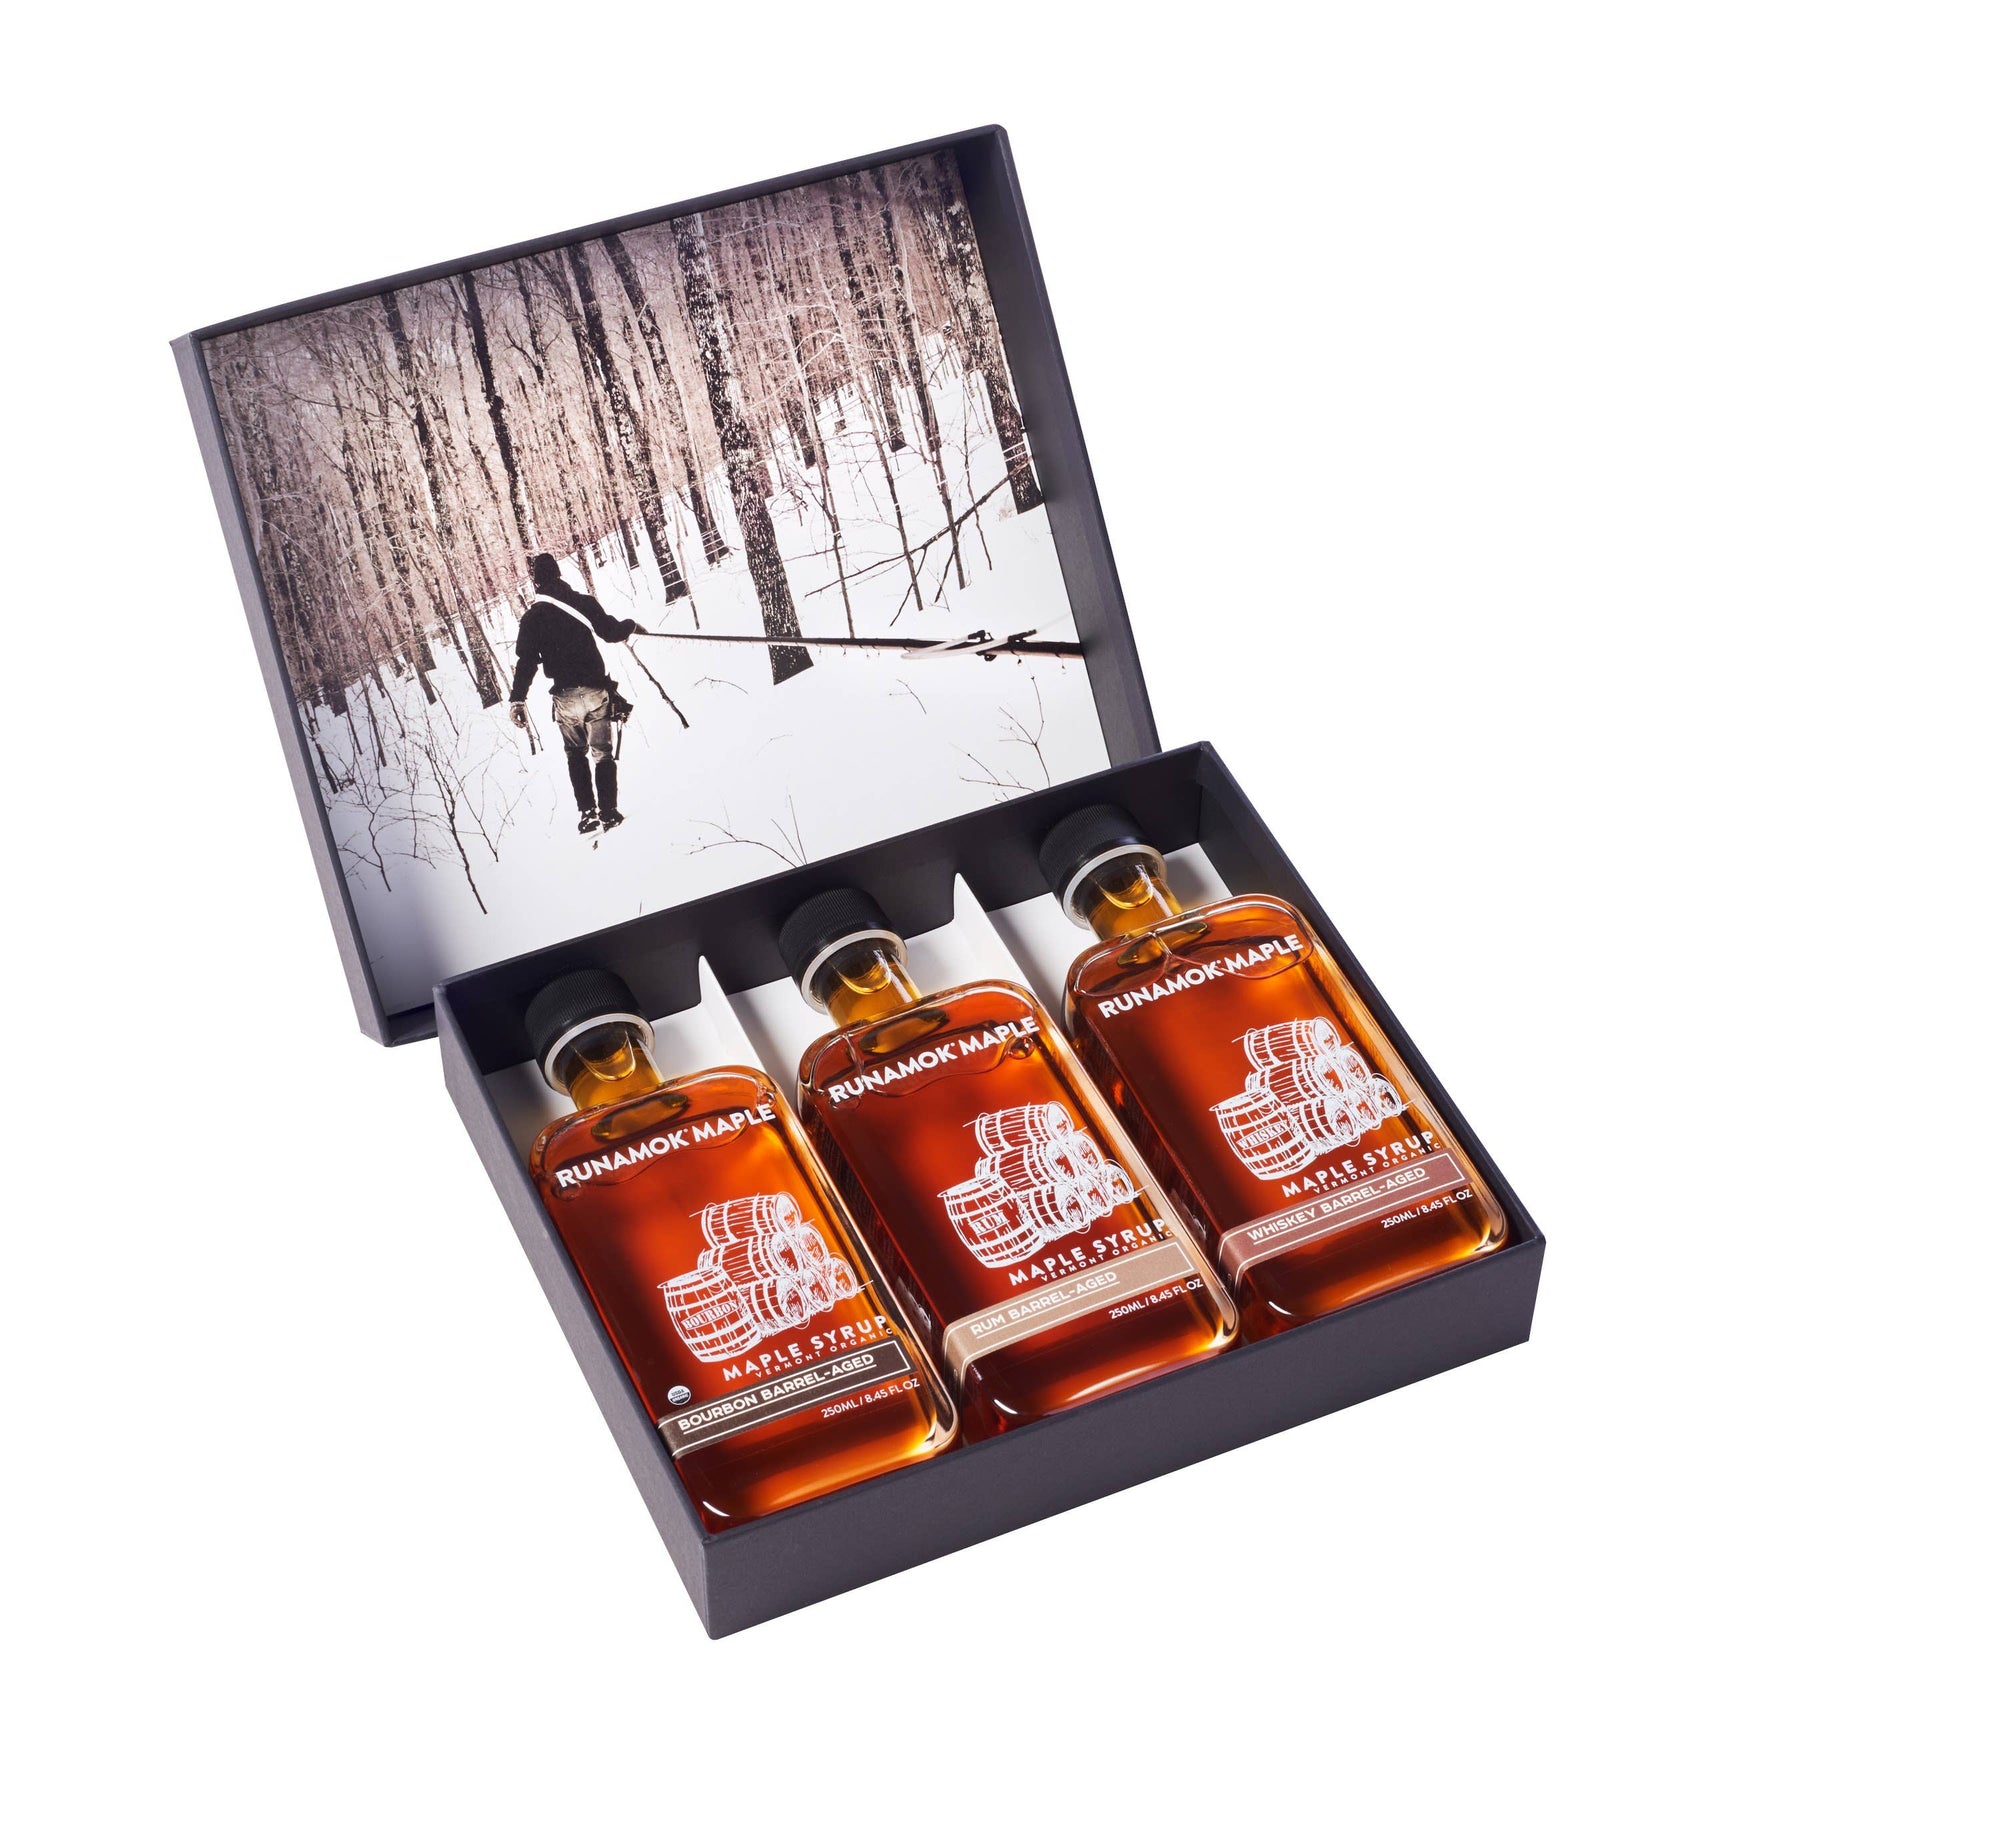 Barrel-Aged Maple Syrup kLarge Gift Box